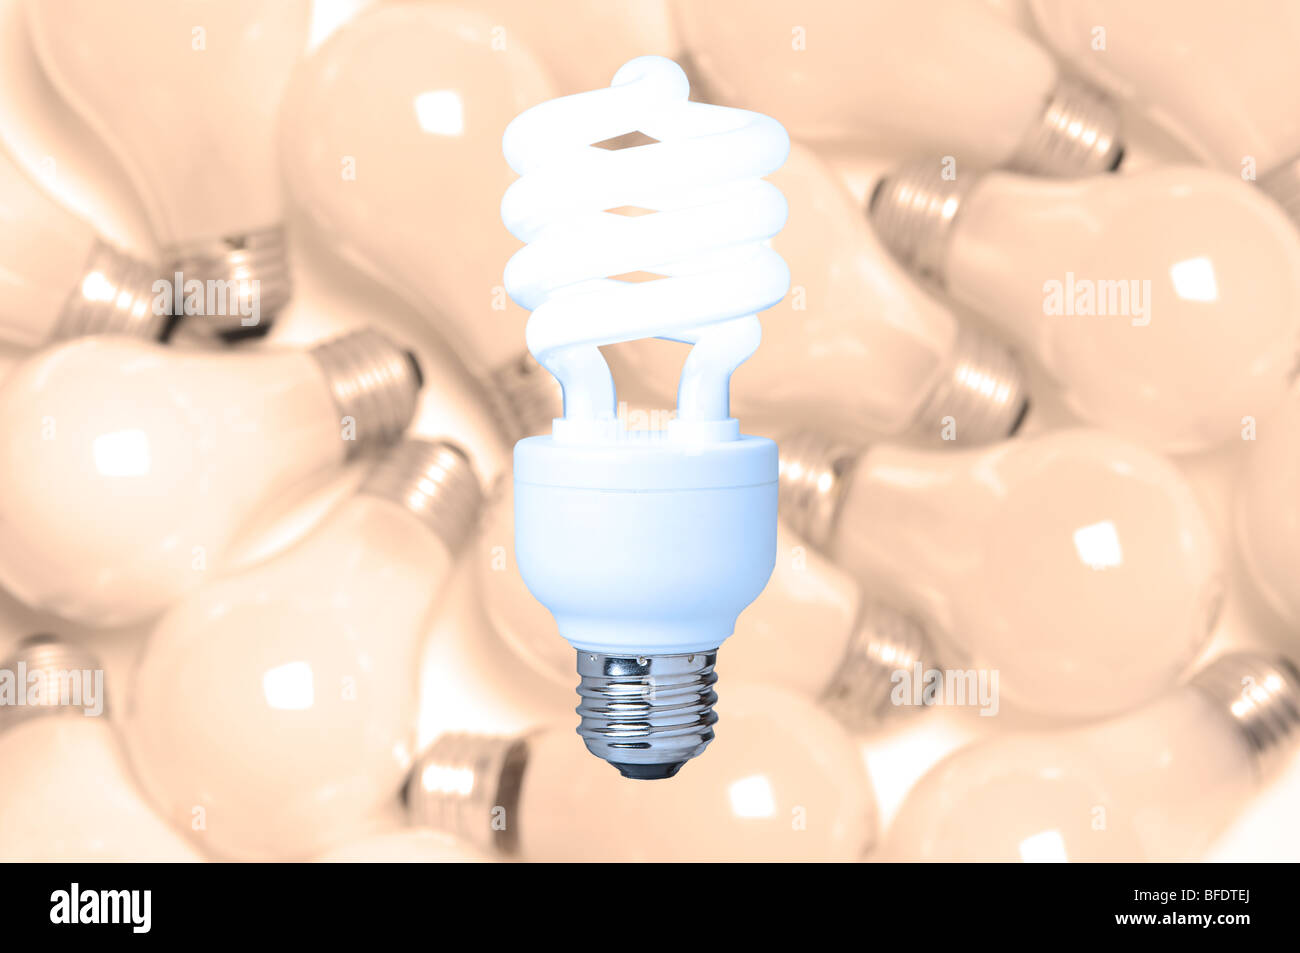 Una bombilla fluorescente compacta con un telón de fondo de las bombillas incandescentes Foto de stock